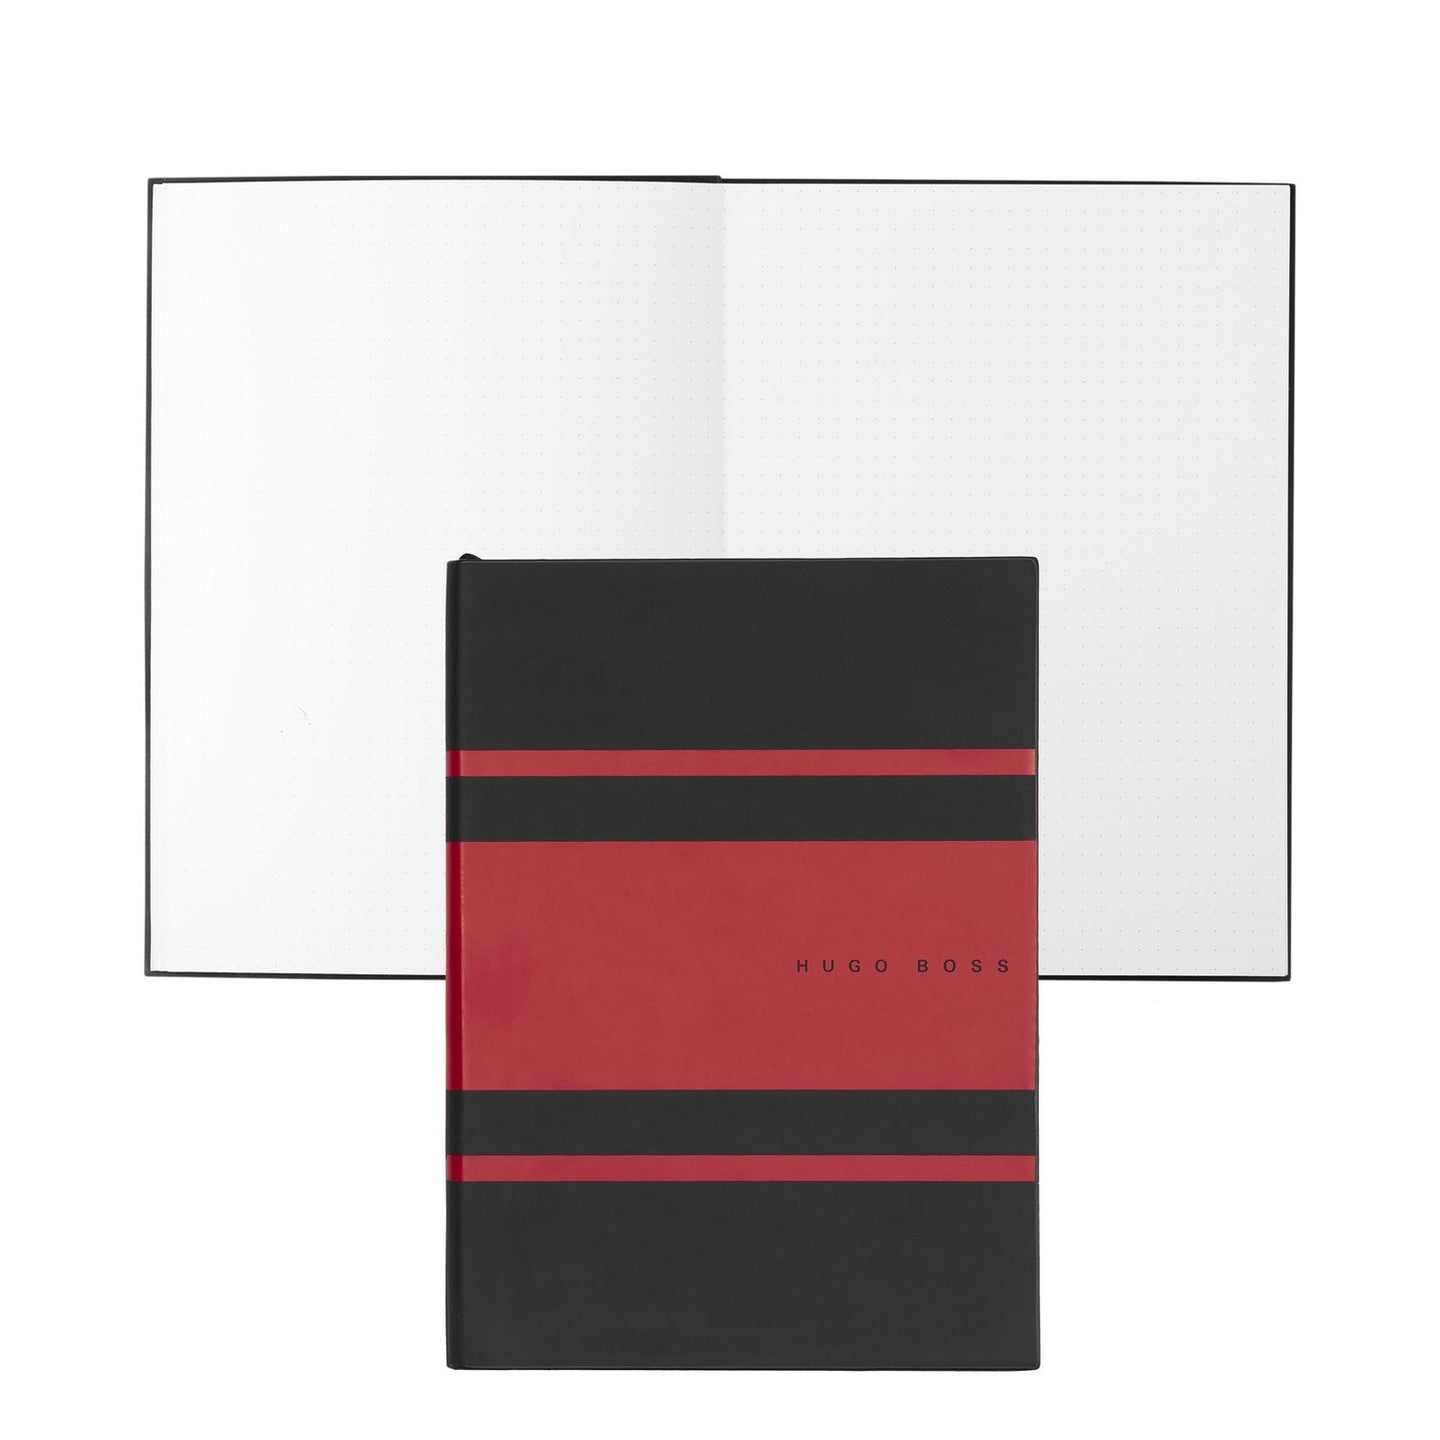 Hugo Boss Notizbuch A5 Essential Gear Matrix Red Dots